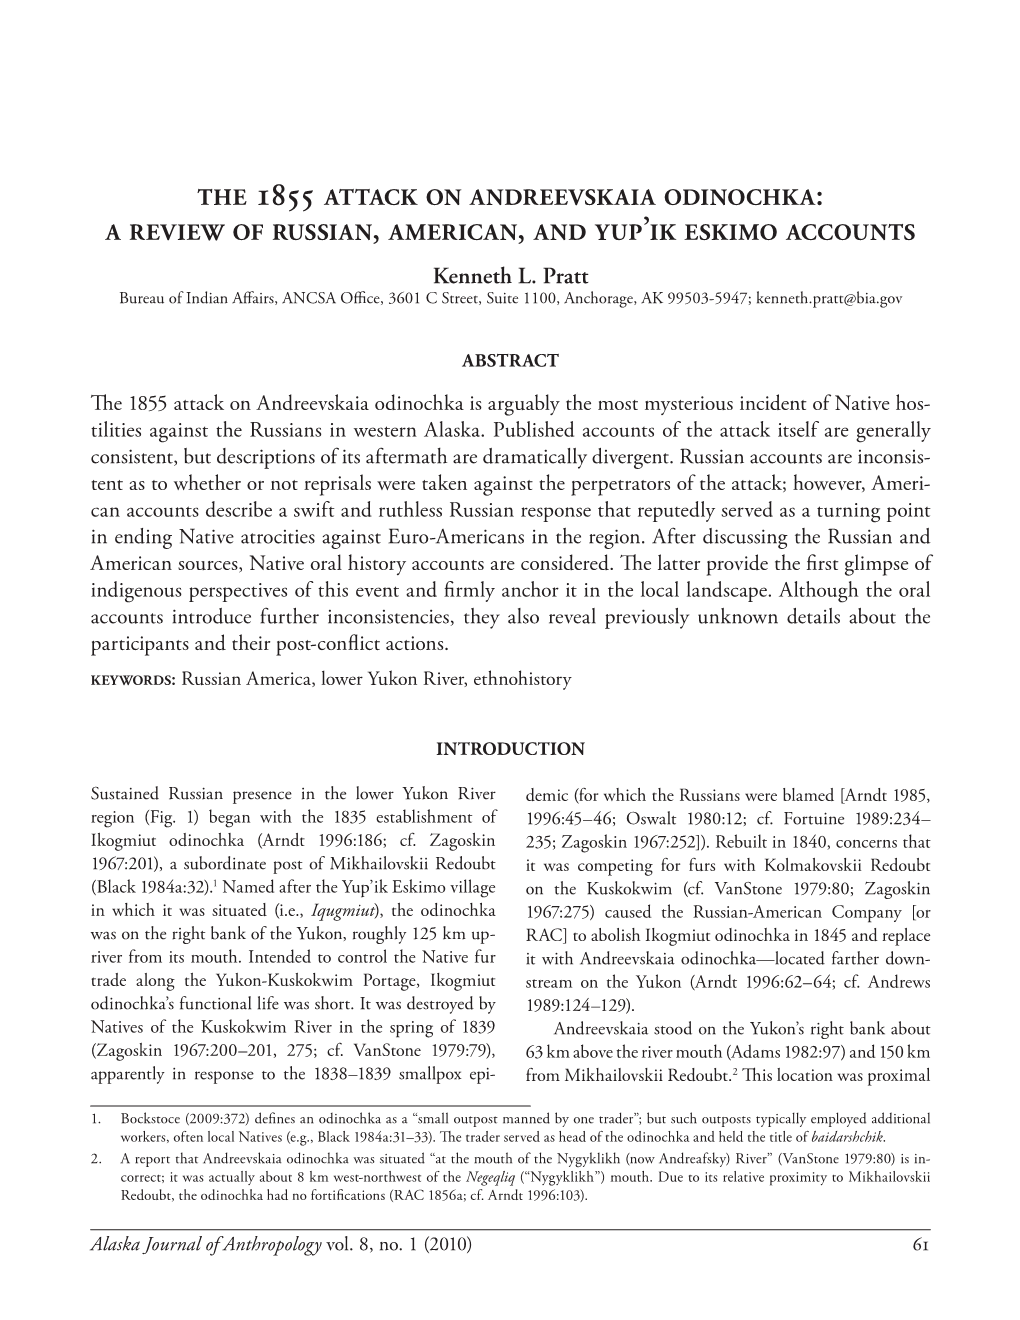 The 1855 Attack on Andreevskaia Odinochka A